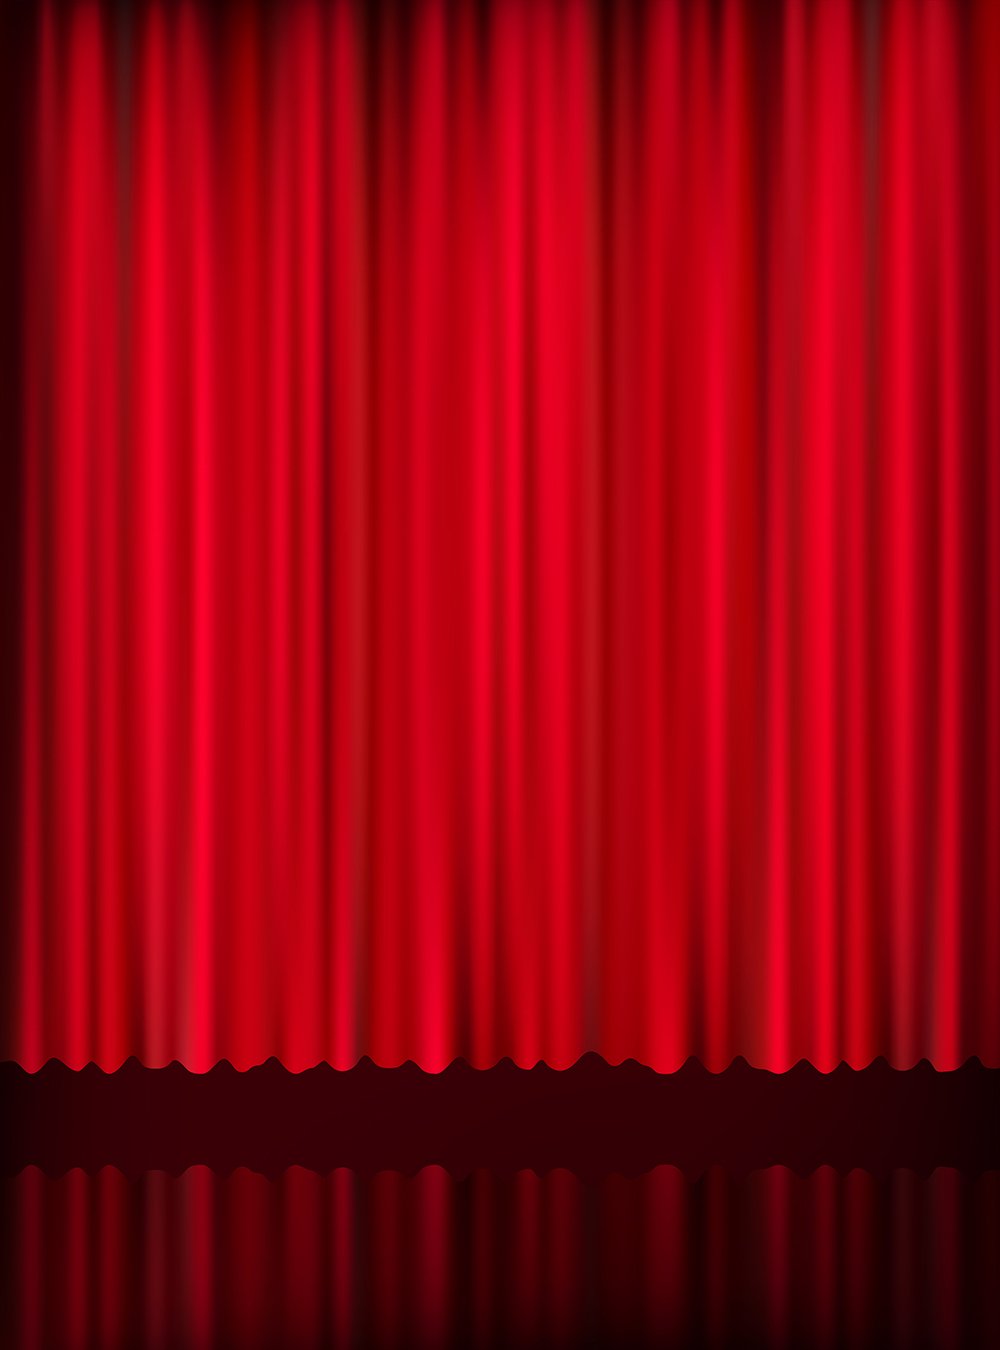 Rèm đỏ nền nền sân khấu sáng rực ảnh biểu diễn: Cảm nhận được sự lung linh, đam mê và tinh tế khi chiếc rèm đỏ được sử dụng để trang trí nền sân khấu cho buổi biểu diễn. Chỉ cần một cái nhìn ngắm nhìn, bạn đã có thể cảm nhận được sức hút của chiếc rèm đỏ này đấy.